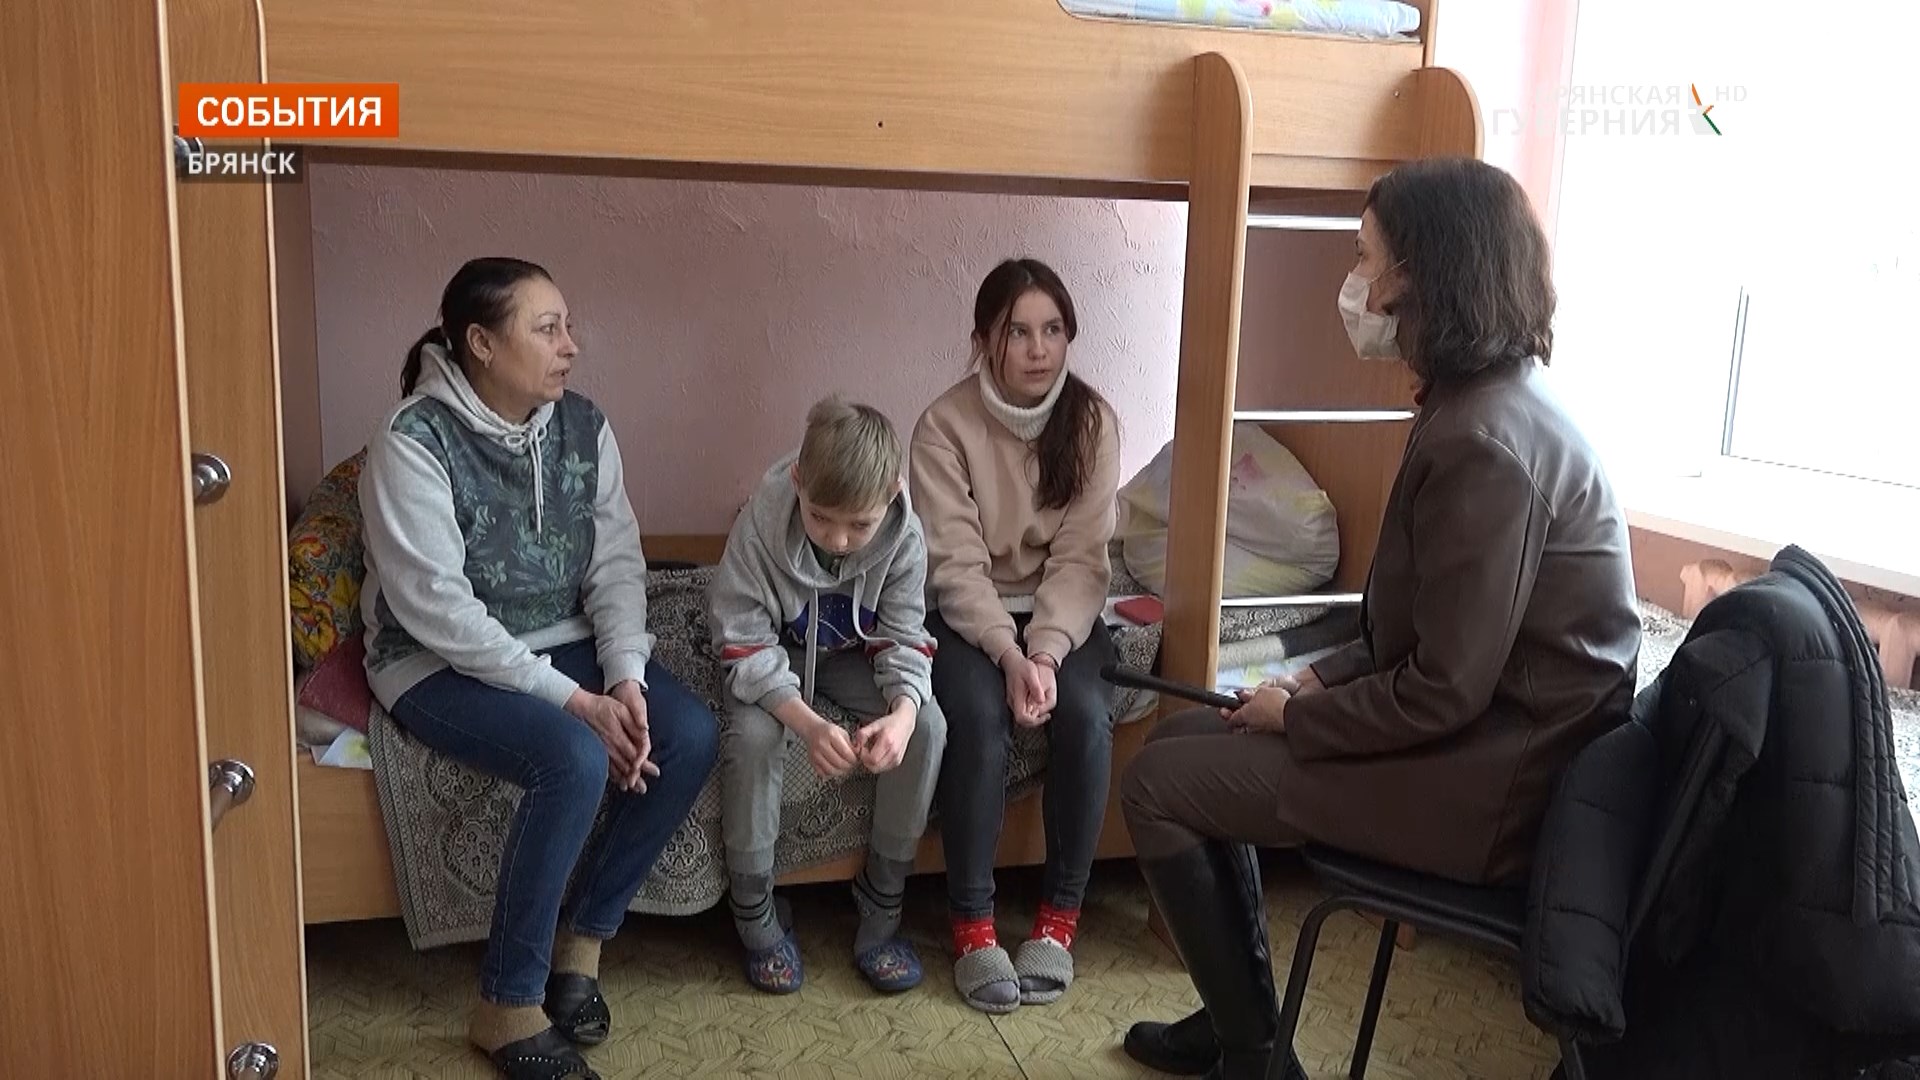 Брянск приютил спасающихся от артобстрелов в Донецке Ирину Ганзелюк с внуками